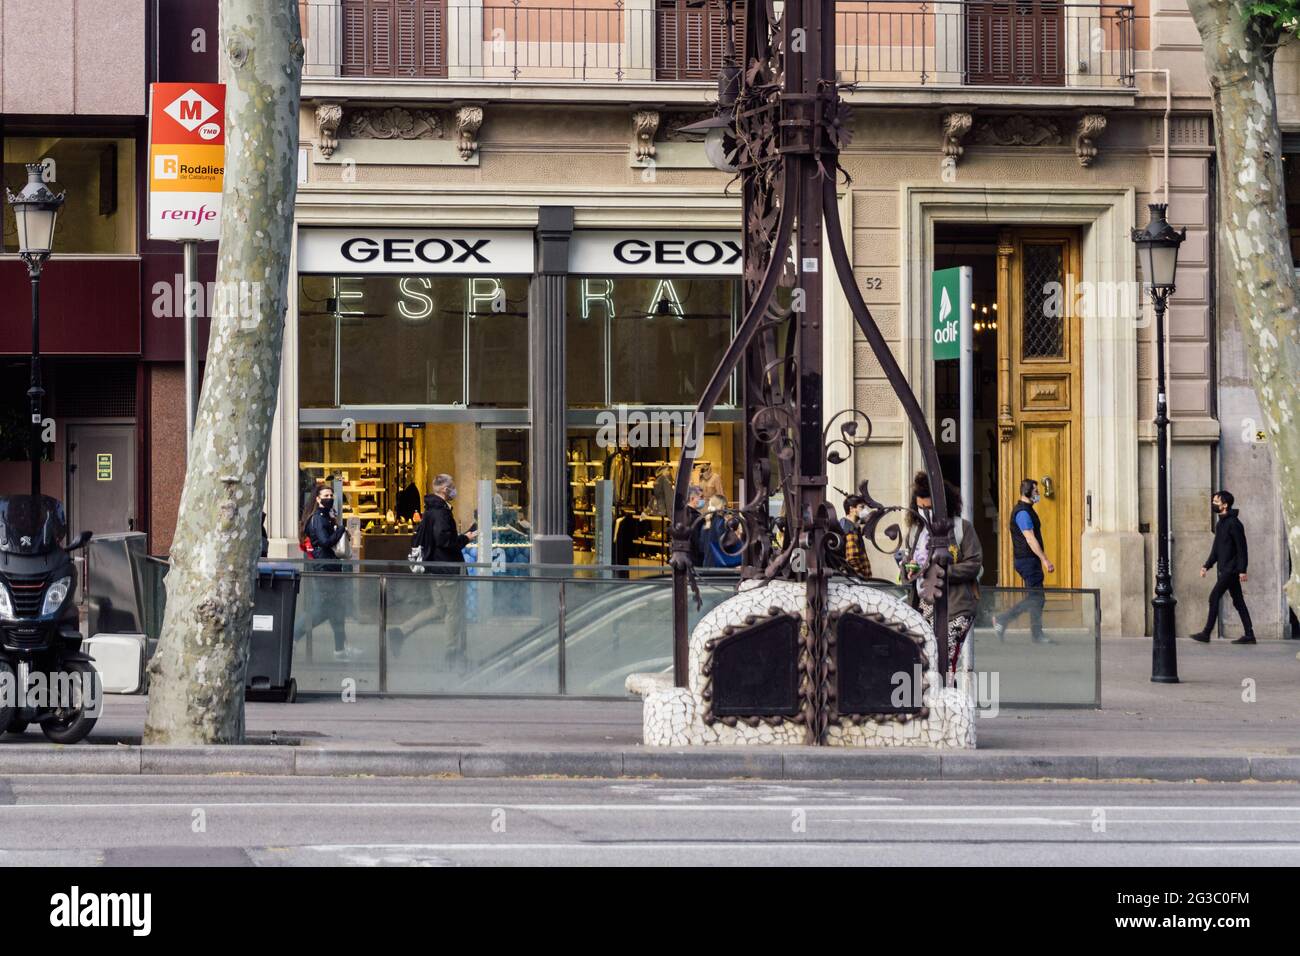 Barcelona, España - 11 de mayo de 2021. Logotipo fachada de Geox, marca italiana zapatos transpirables y resistentes a líquidos de stock -